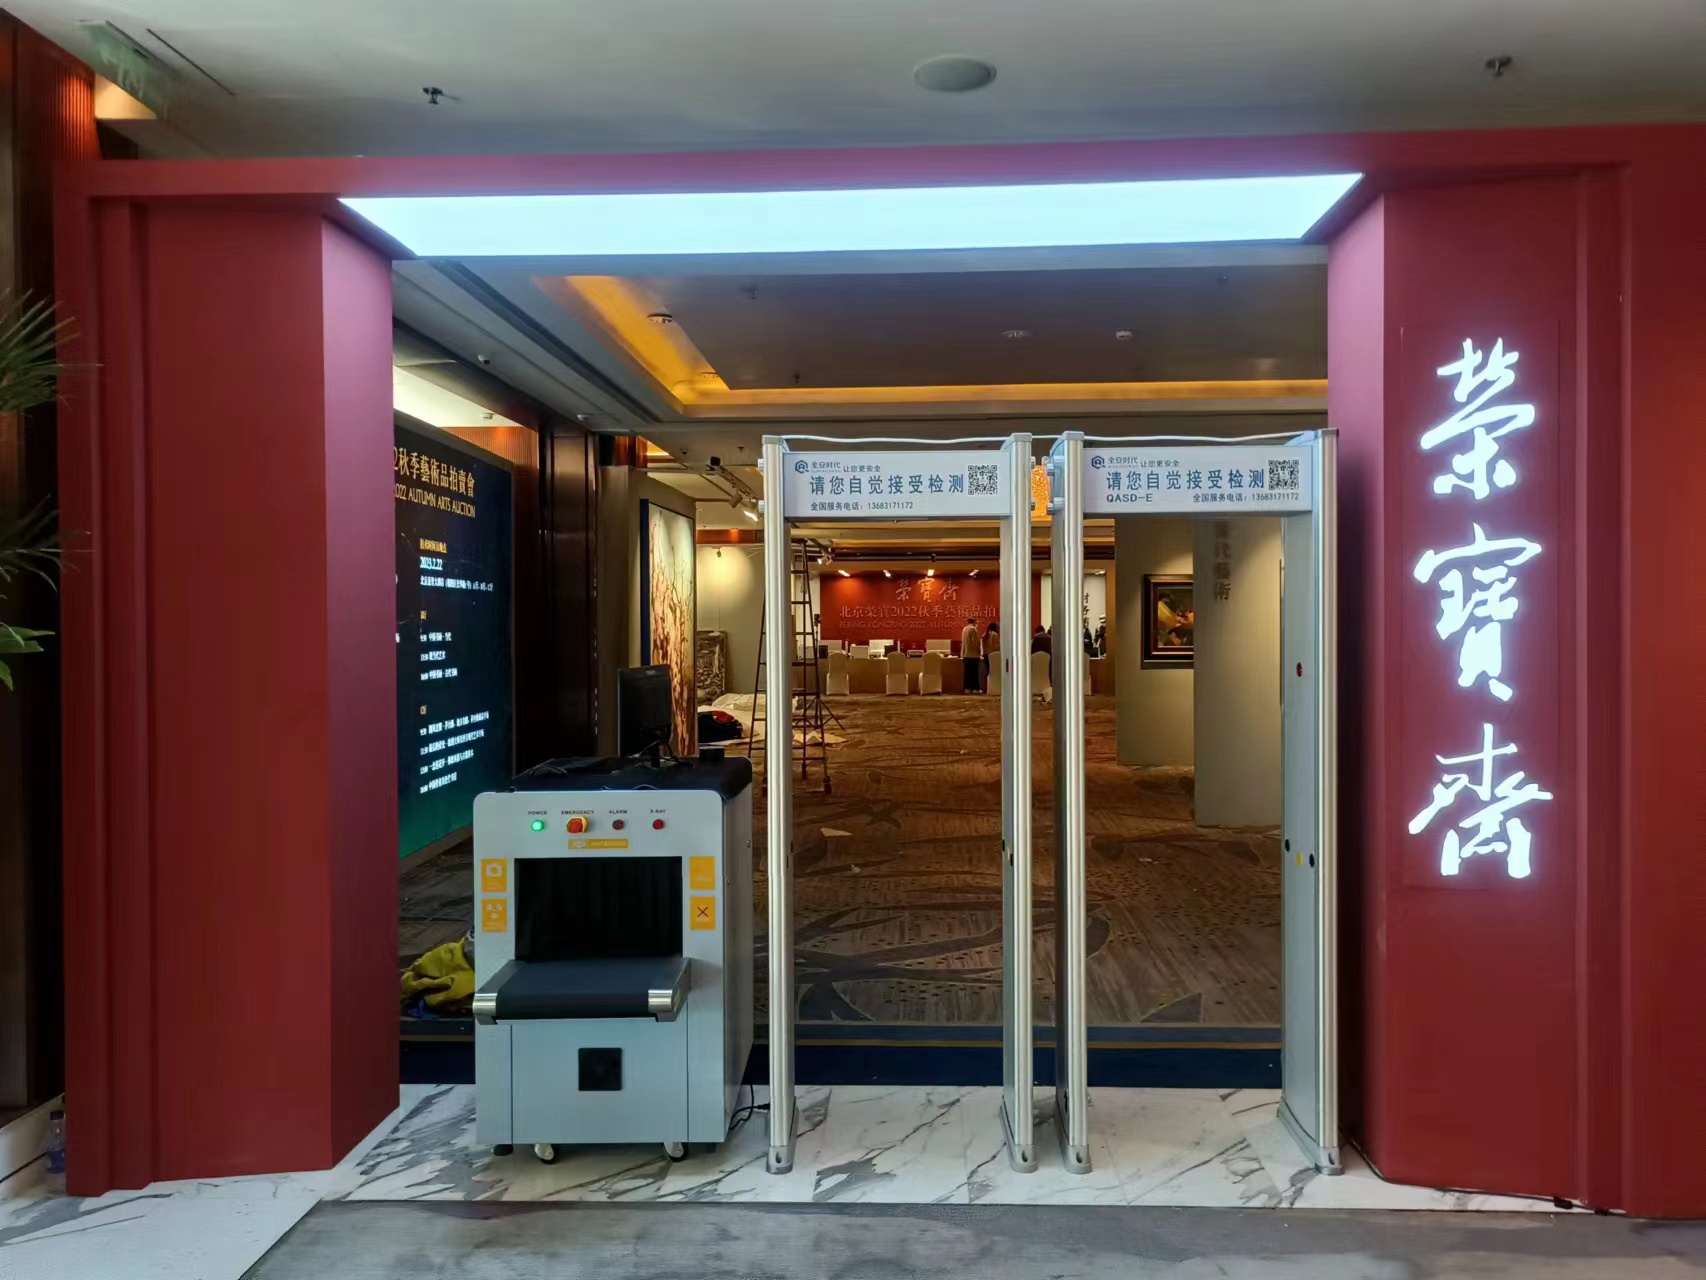 北京出租出售安检门安检机铁马护栏一米线安检设备